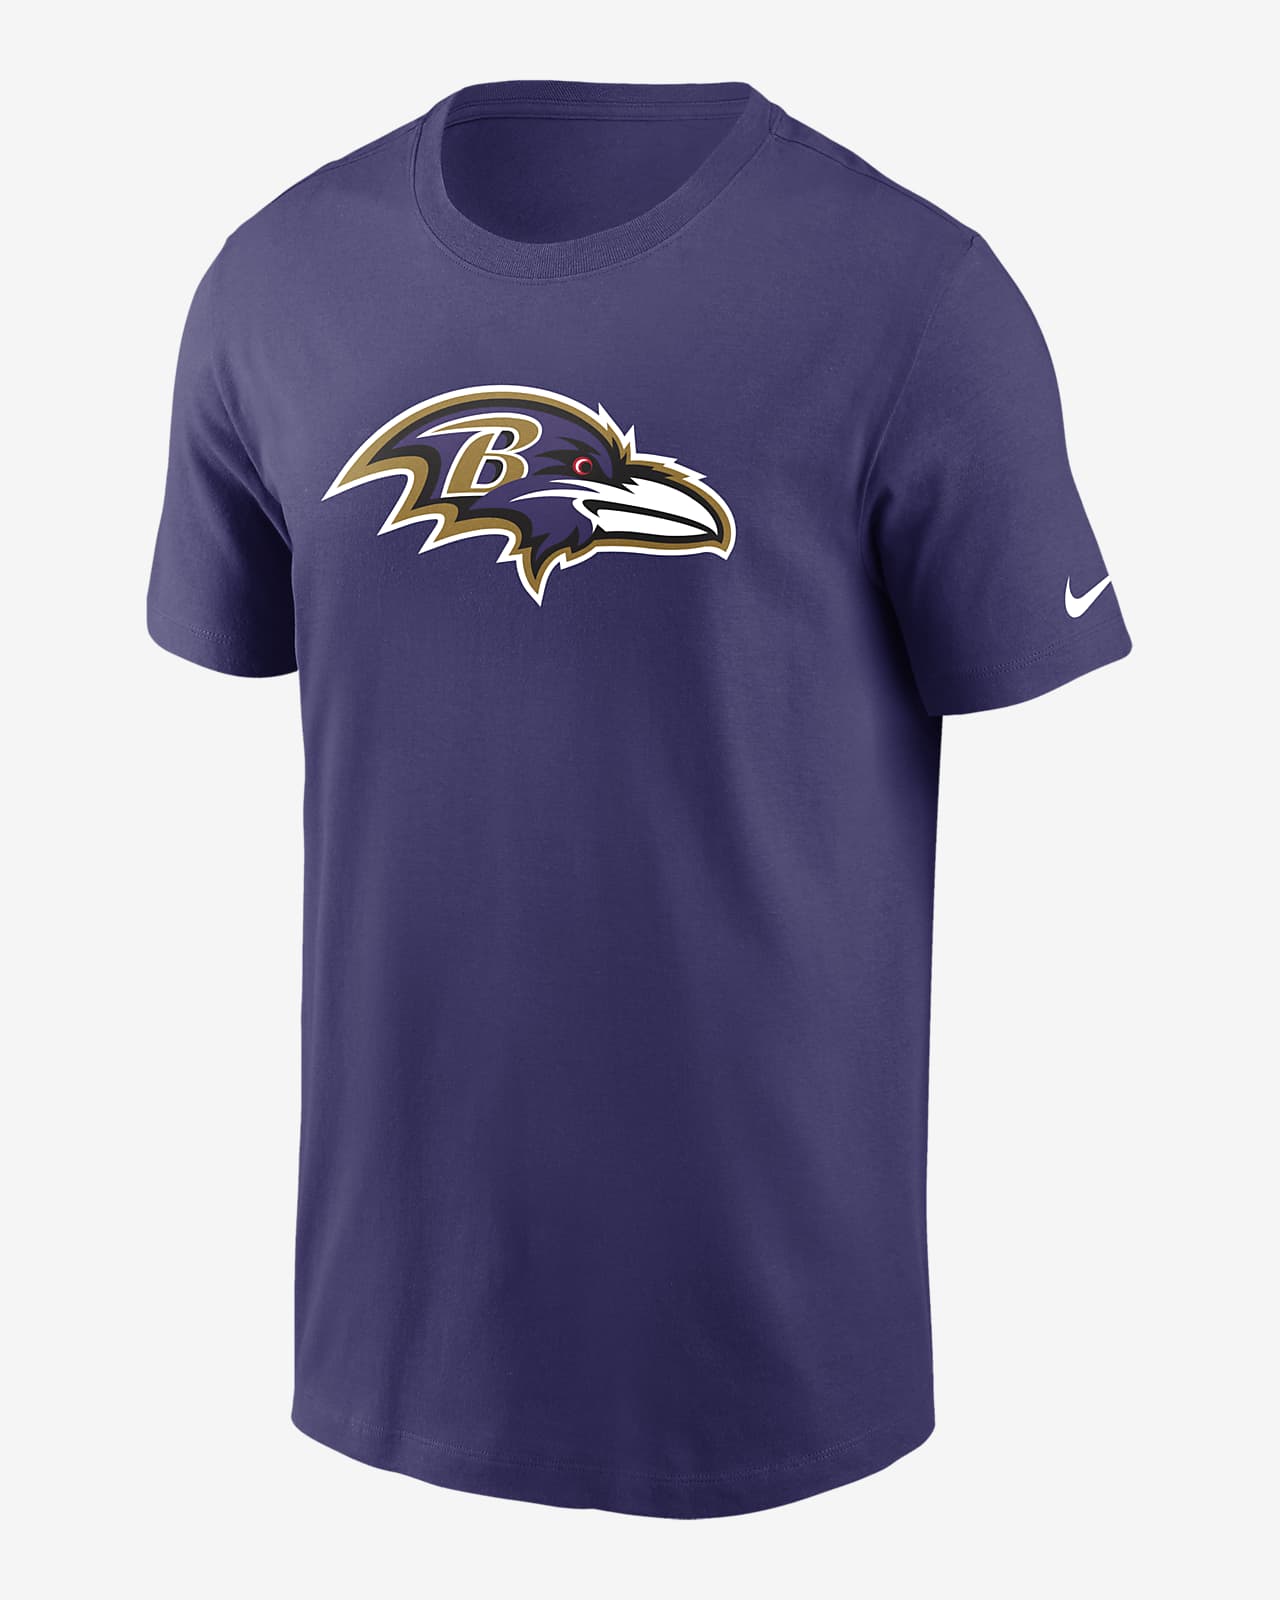 Playera para hombre Nike Logo Essential (NFL Baltimore Ravens)